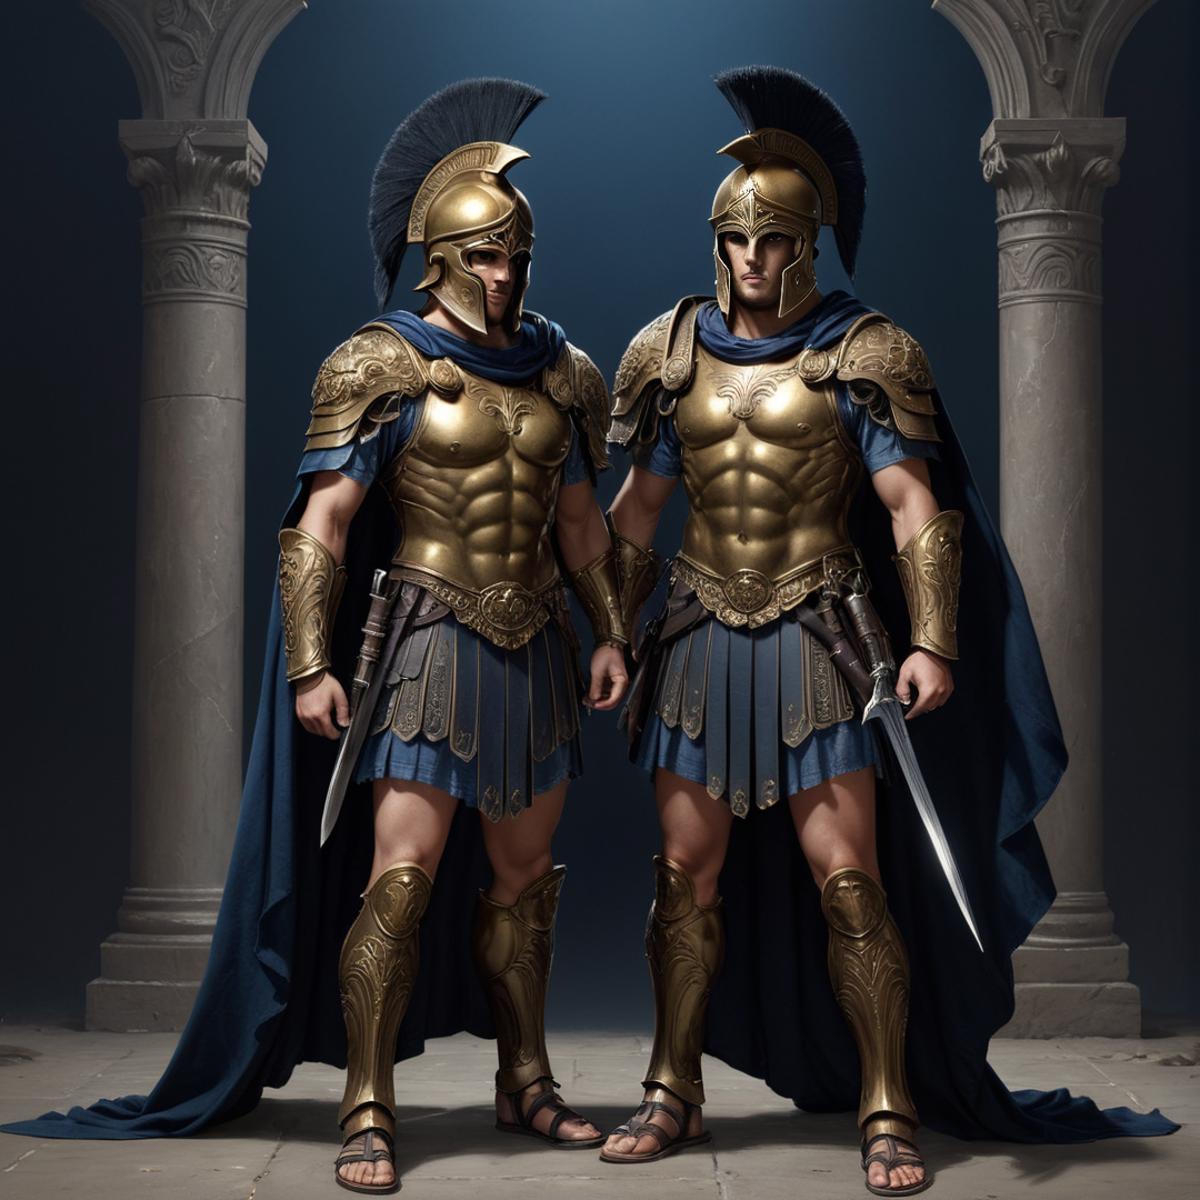 Spartan Armor XL image by VapoCorteX